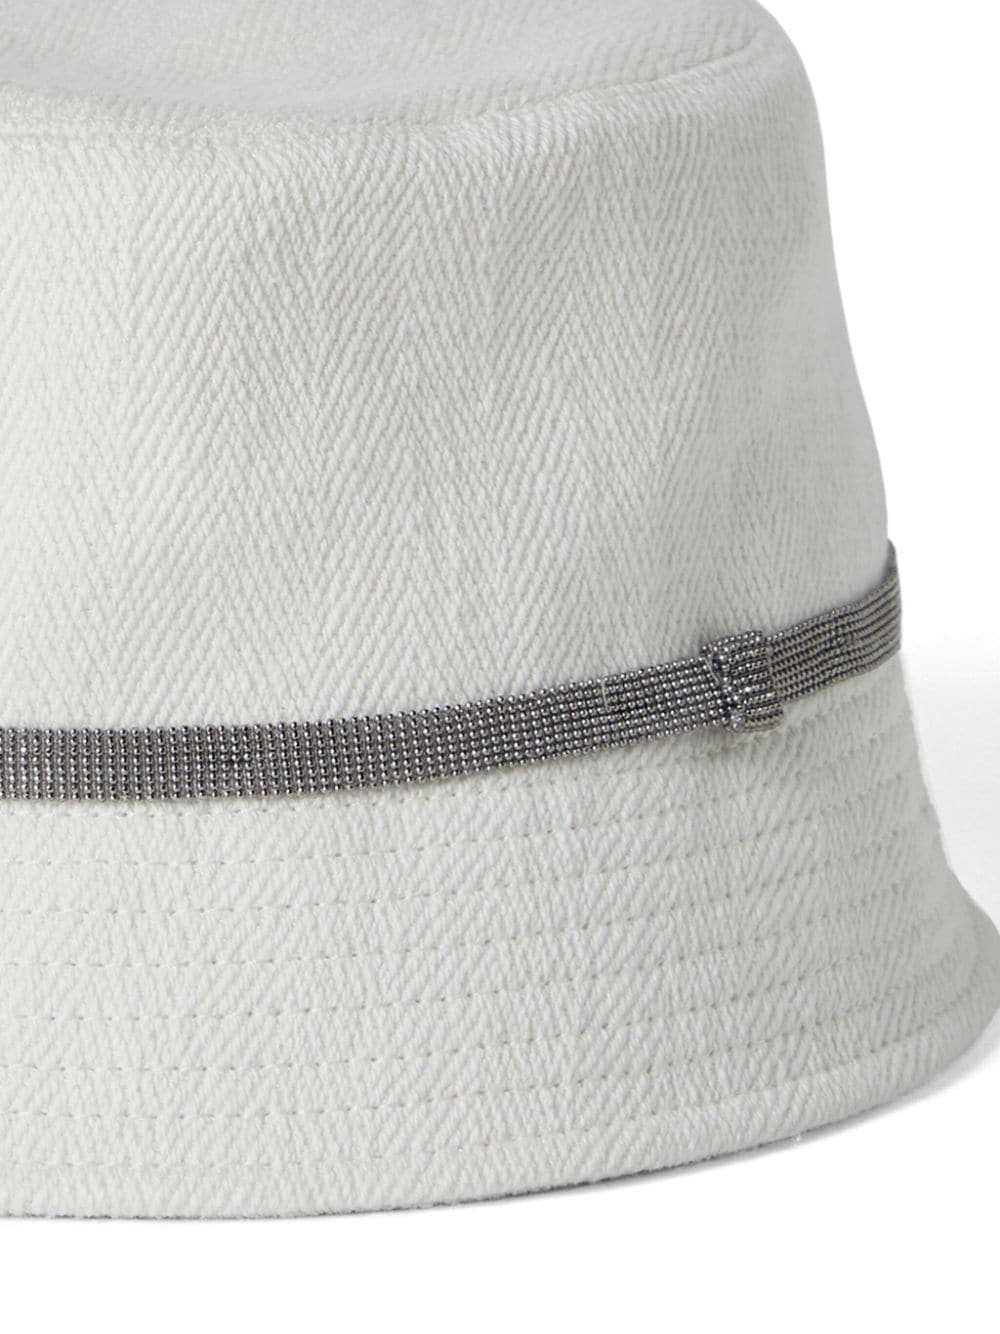 时尚白色帽子 搭配闪亮细节